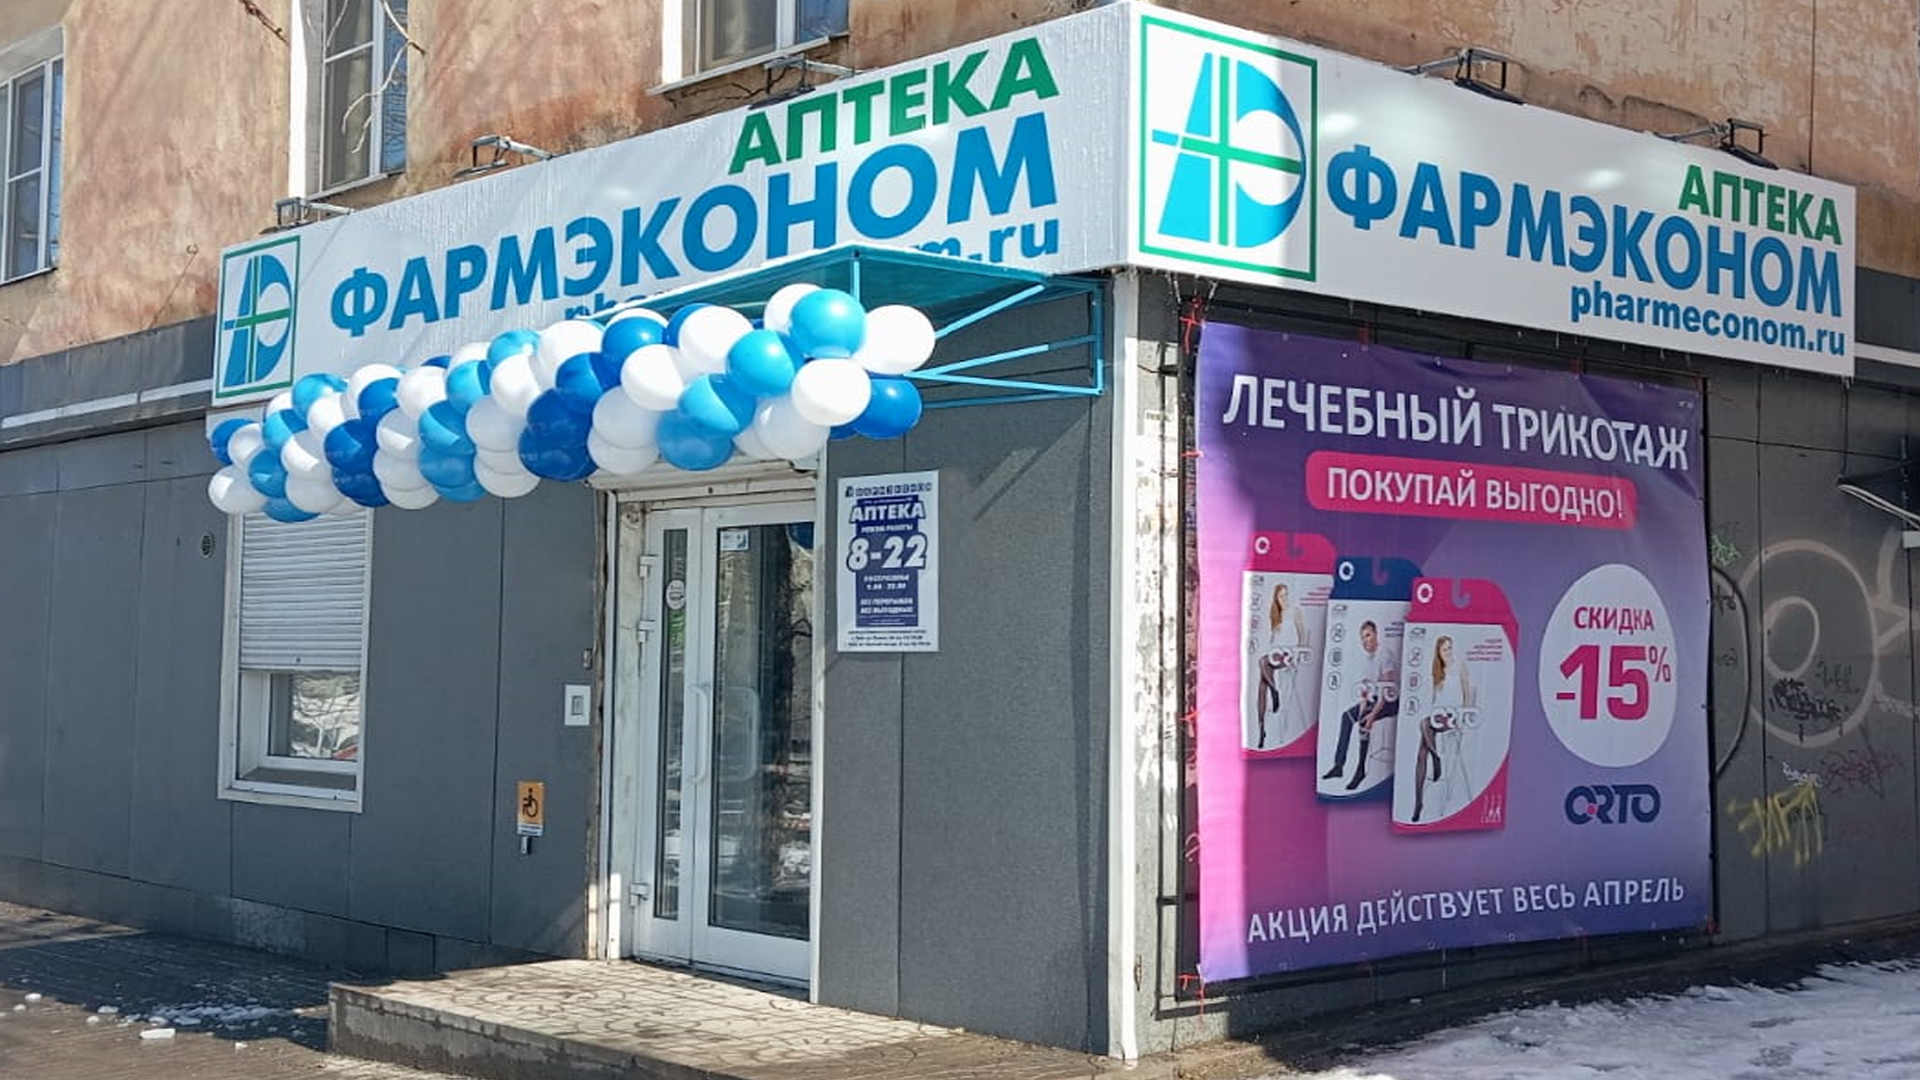 Открылась новая аптека ФАРМЭКОНОМ в Чите!